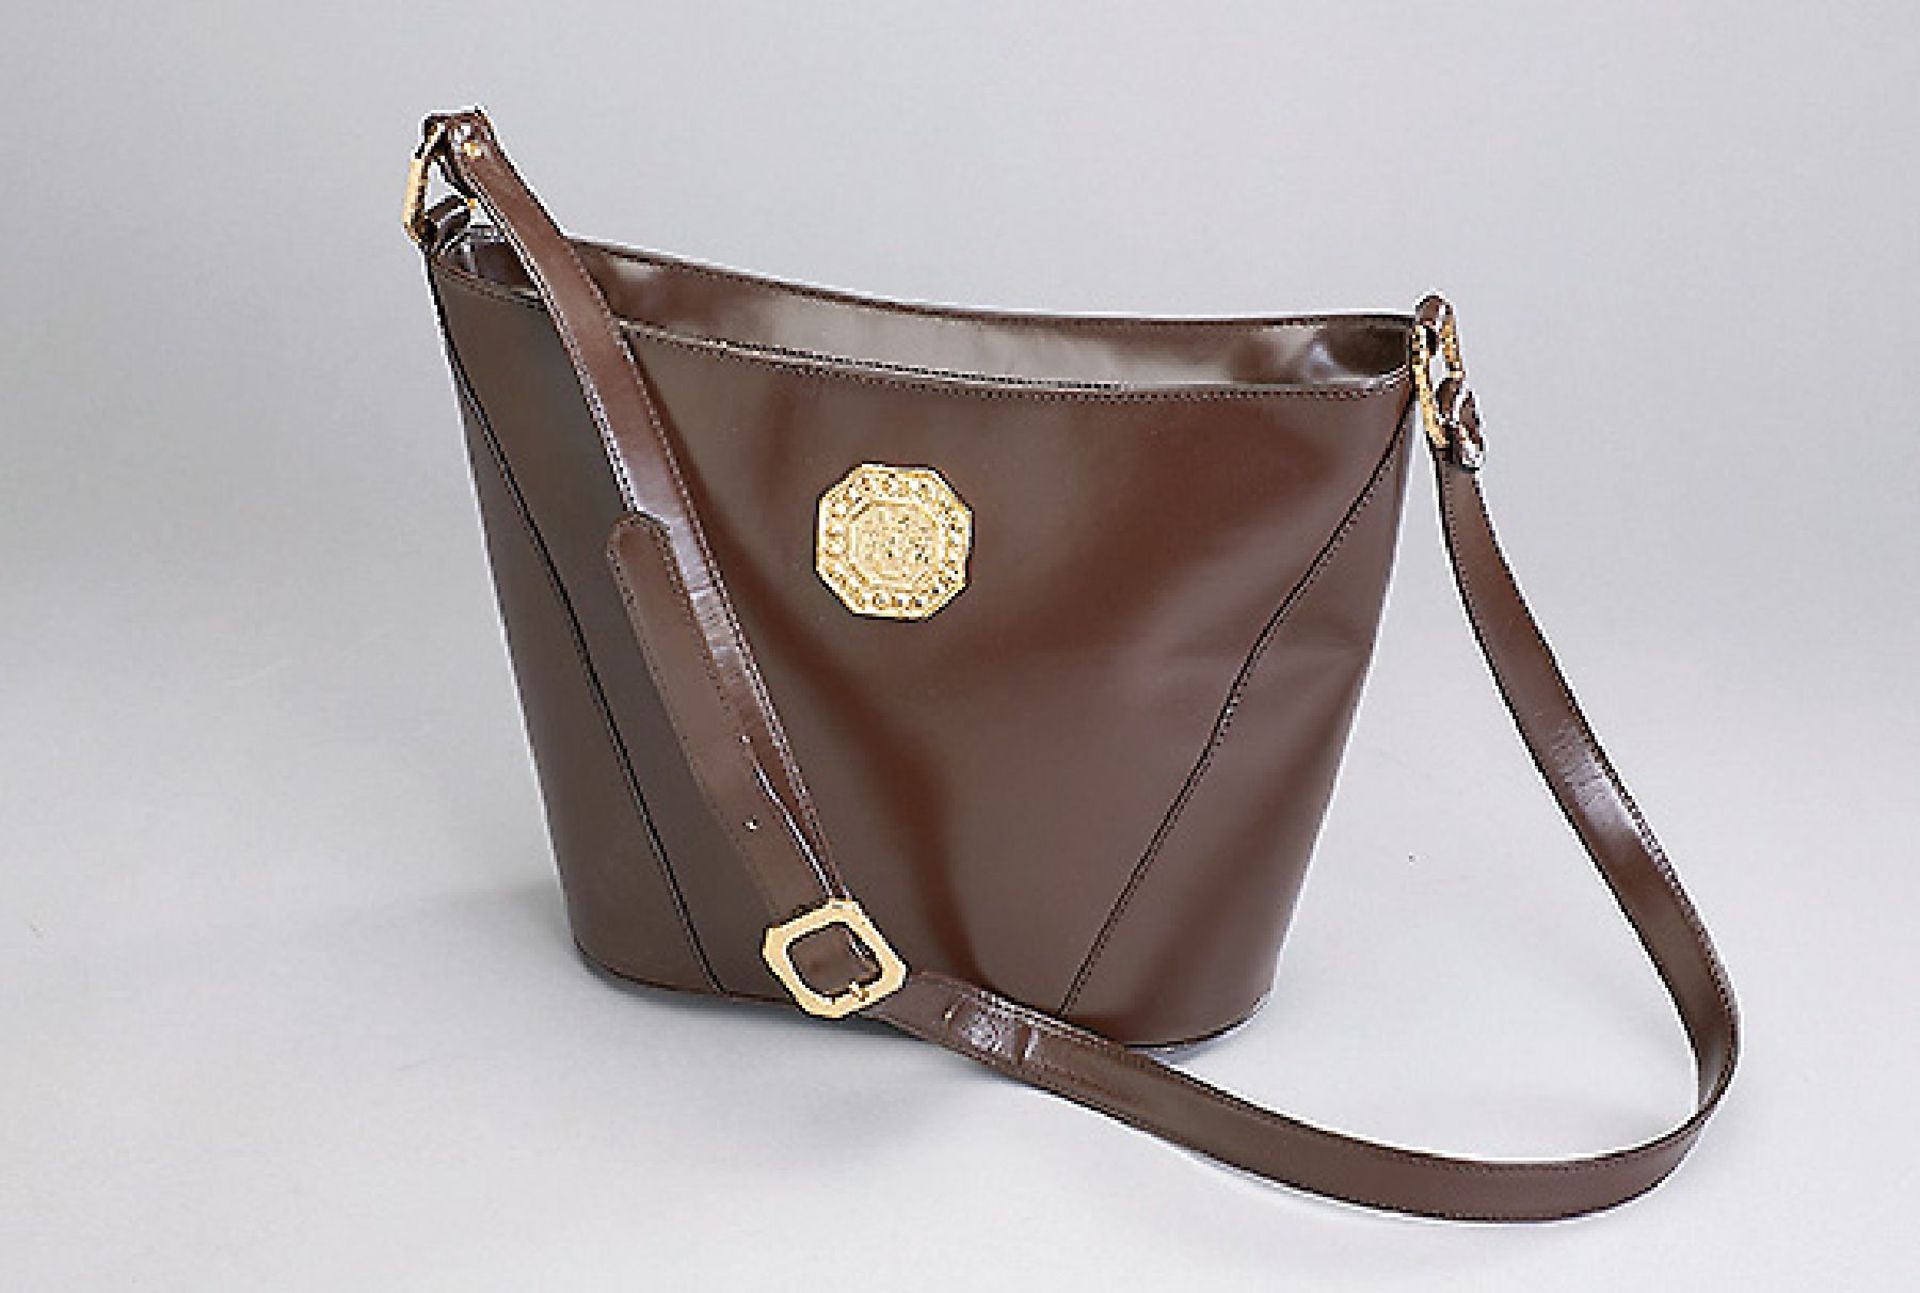 YVES SAINT LAURENT shoulder bag, Vintage - model, brown plain leather inside and outside, fixtures